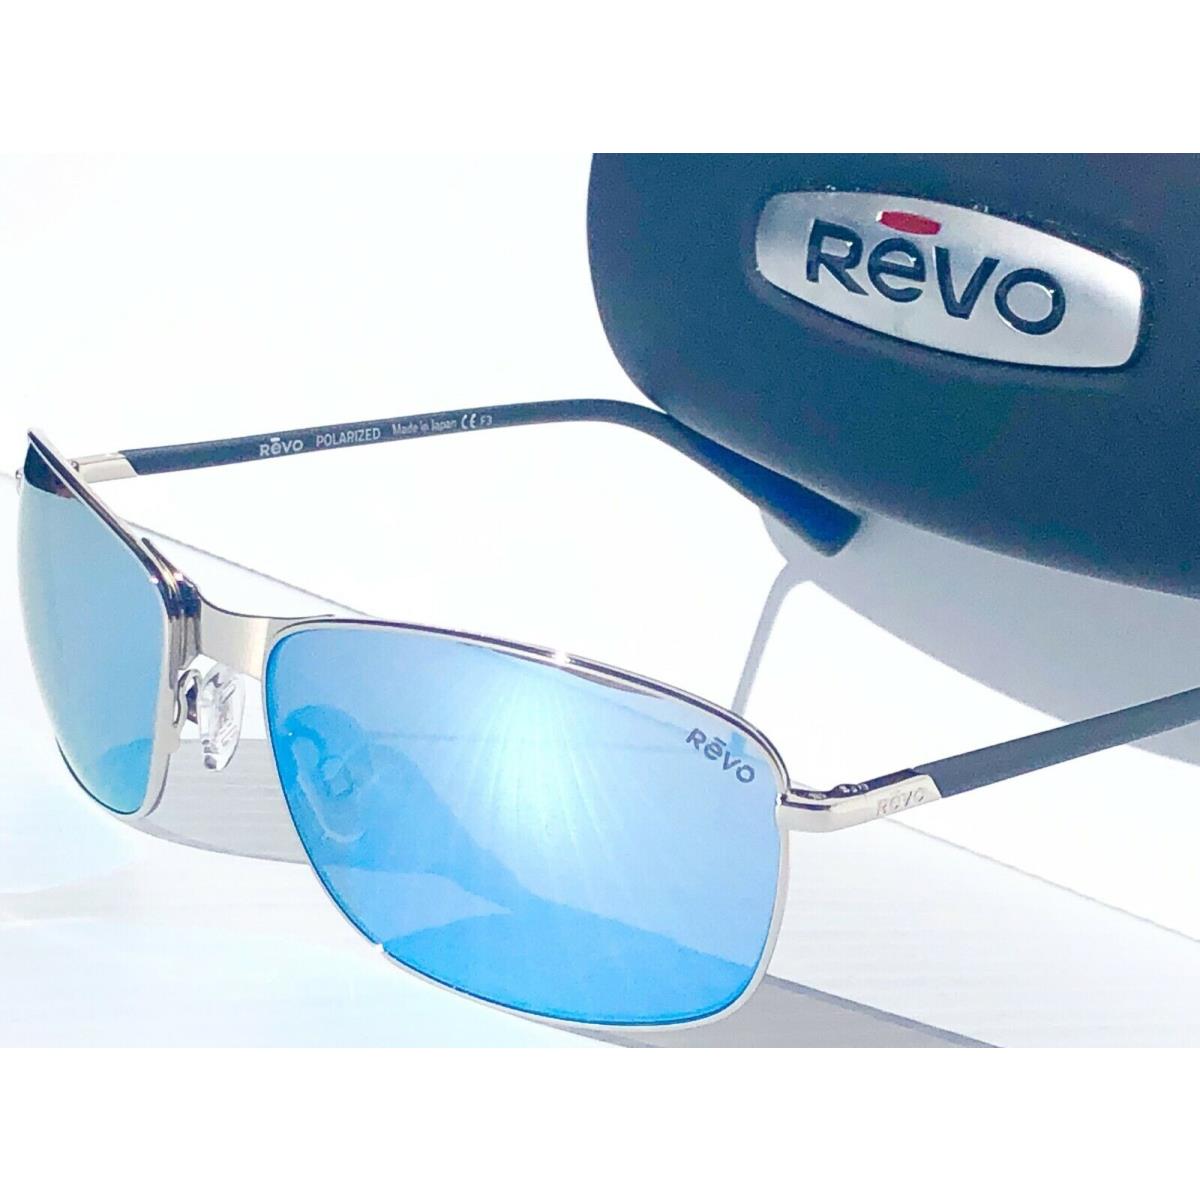 Revo sunglasses Decoy - Silver Frame, Blue Lens